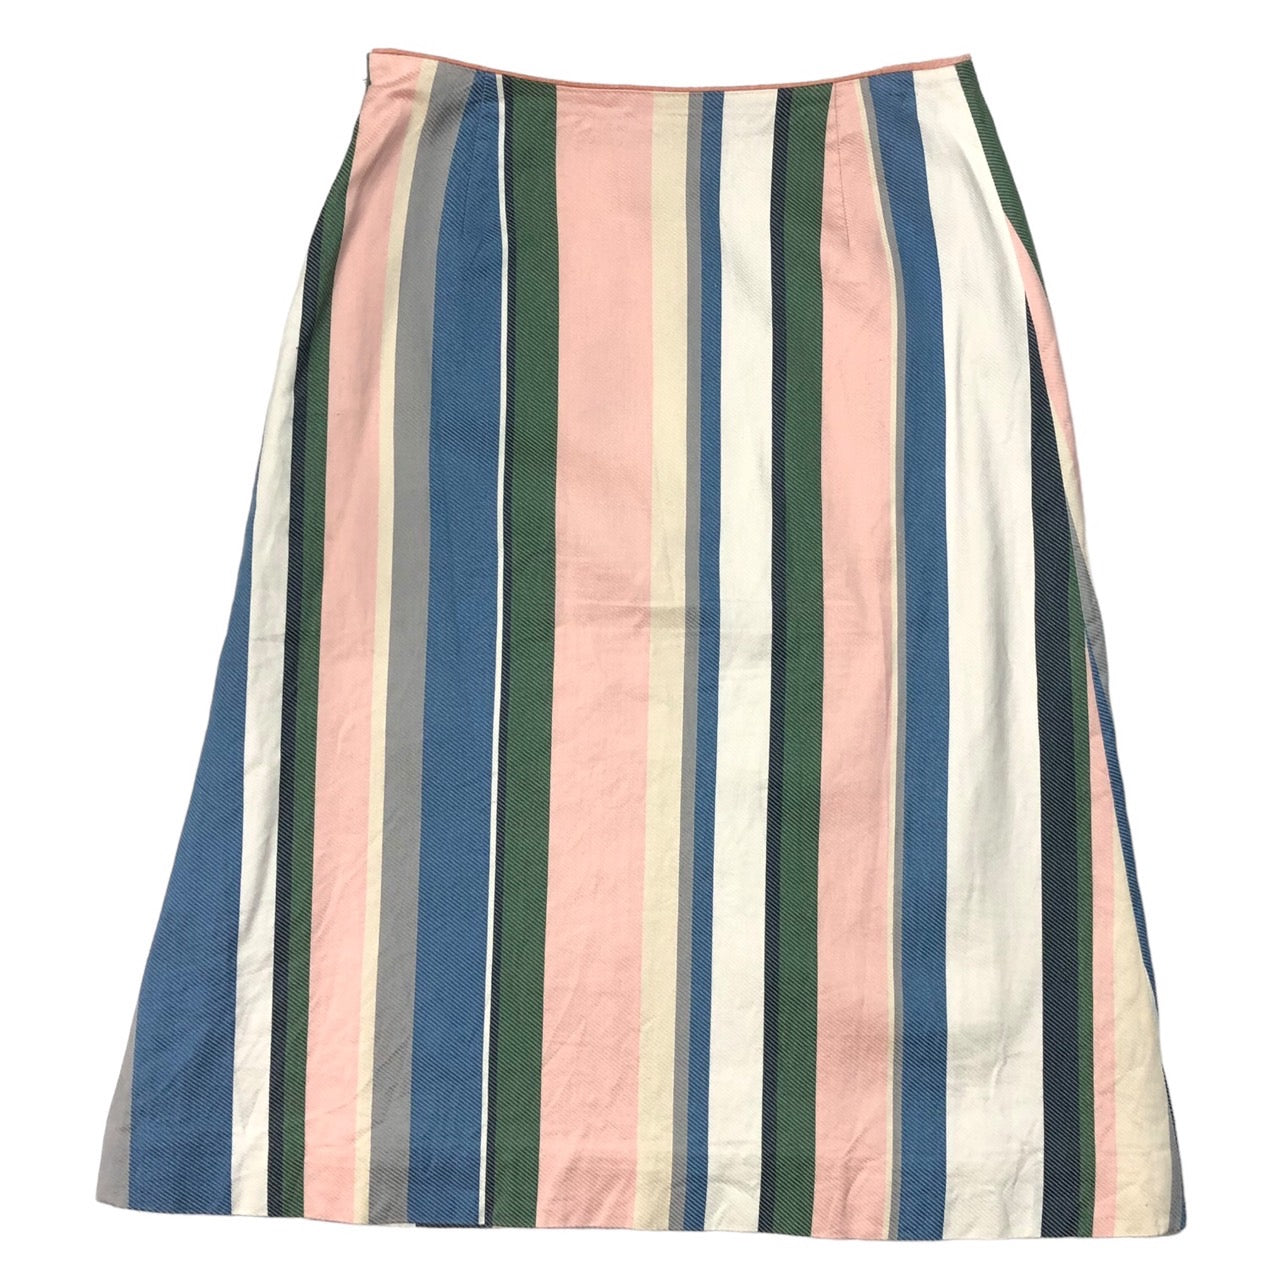 mina perhonen(ミナペルホネン) multi striped skirt マルチストライプ スカート hs5145 SIZE FREE マルチカラー